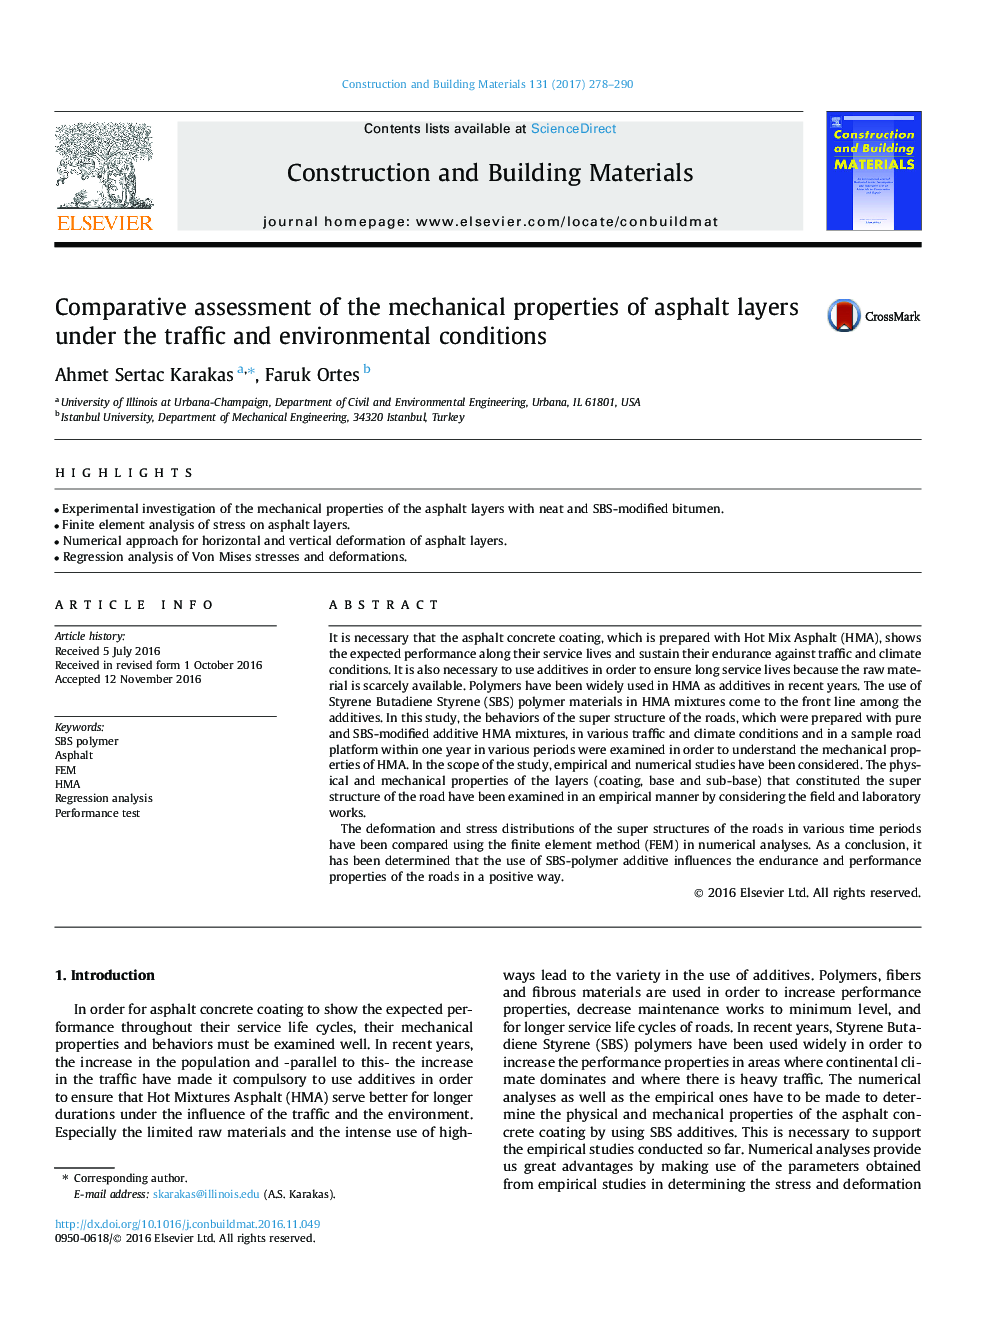 ارزیابی مقایسه خواص مکانیکی لایه های آسفالت تحت شرایط ترافیکی و محیطی 